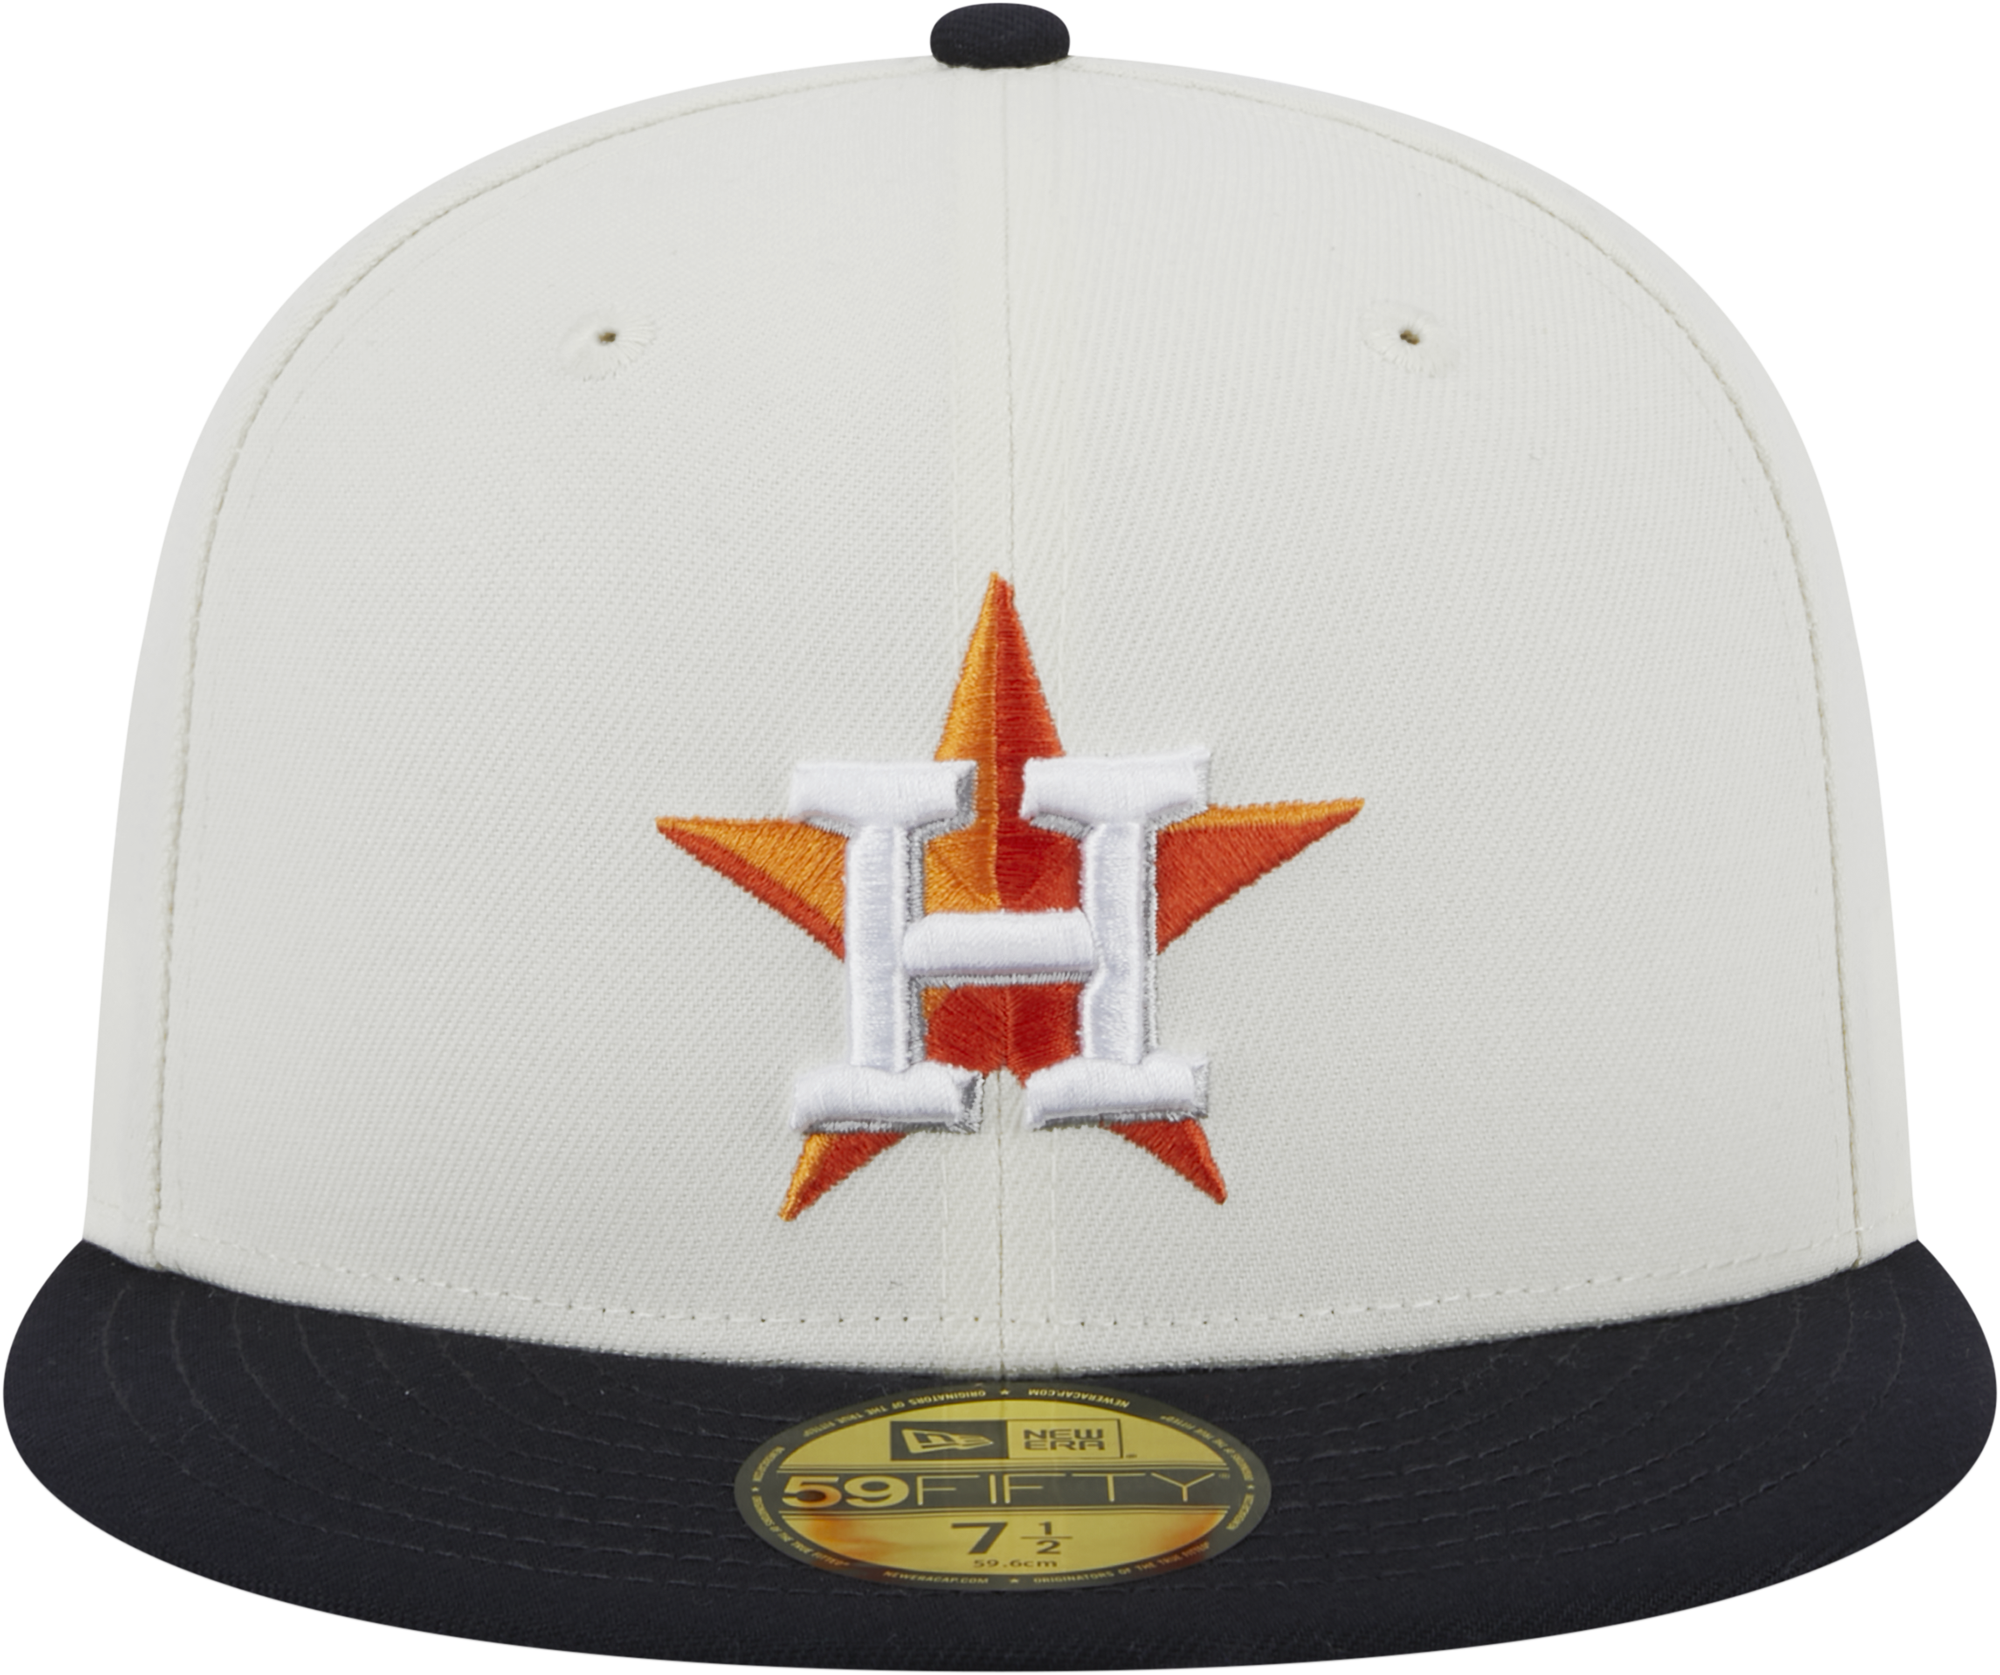 New Era Astros 5950 Retro Fitted Cap